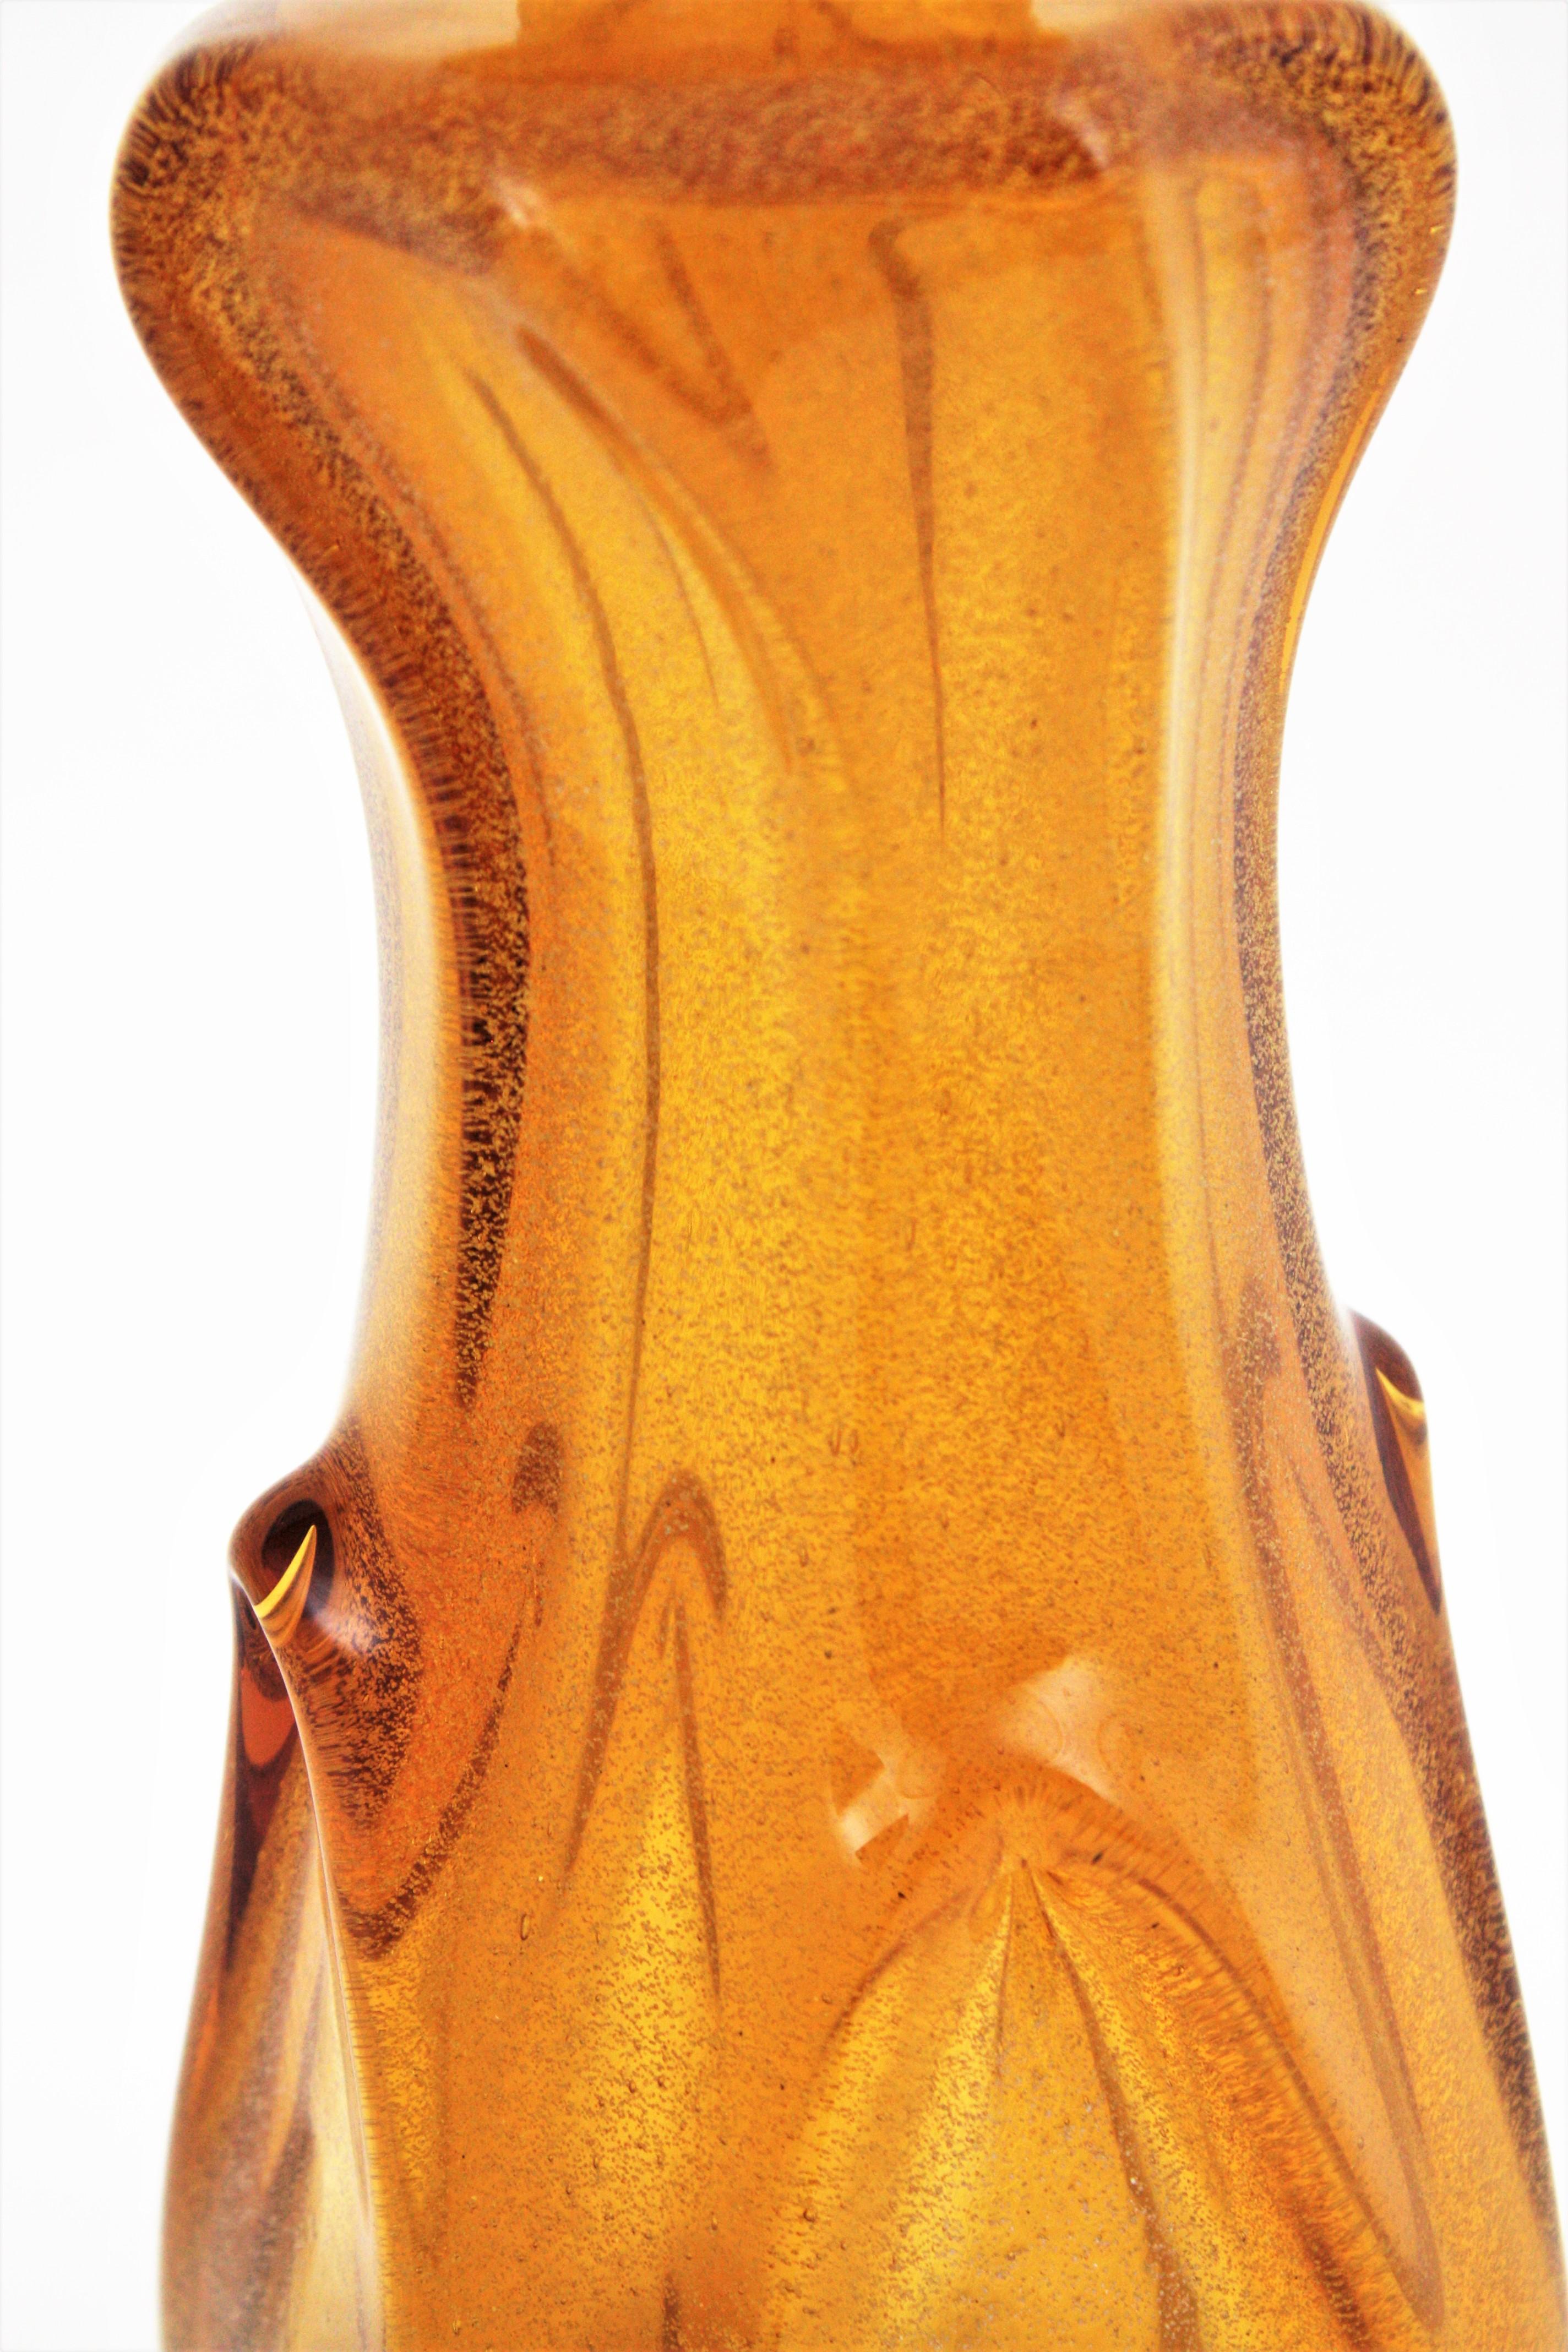 Archimede Seguso Murano Pulegoso Amber Art Glass Decanter For Sale 6